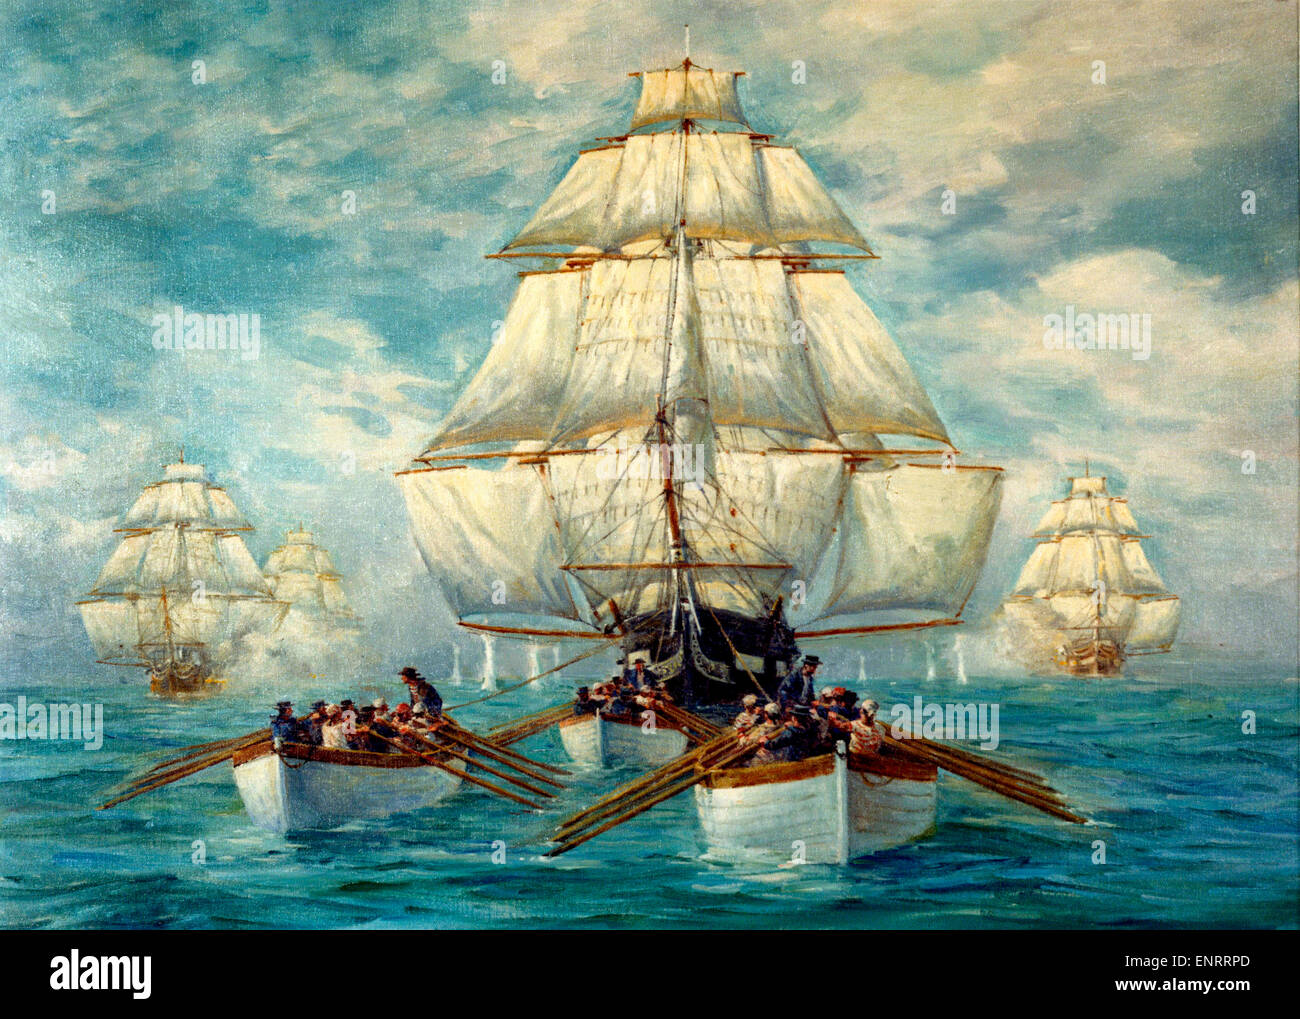 Tableau représentant les bateaux de l'USS Constitution son remorquage dans le calme, alors qu'elle était poursuivie par une escadre de navires britanniques, 18 juillet 1812. Banque D'Images